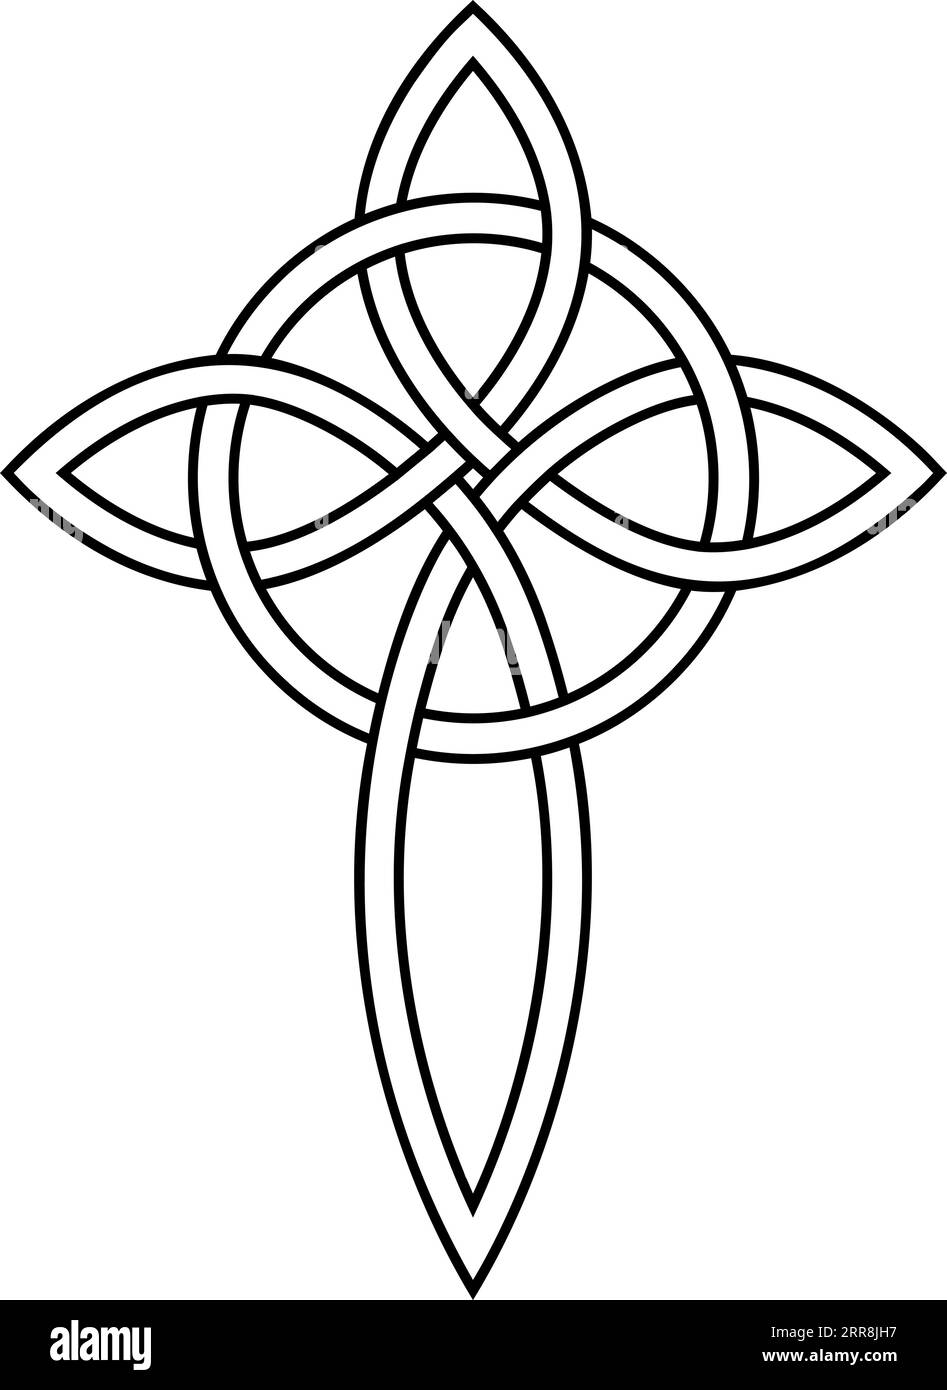 Noeud de croix celtique et cercle magnifique pendentif symbole amitié Illustration de Vecteur